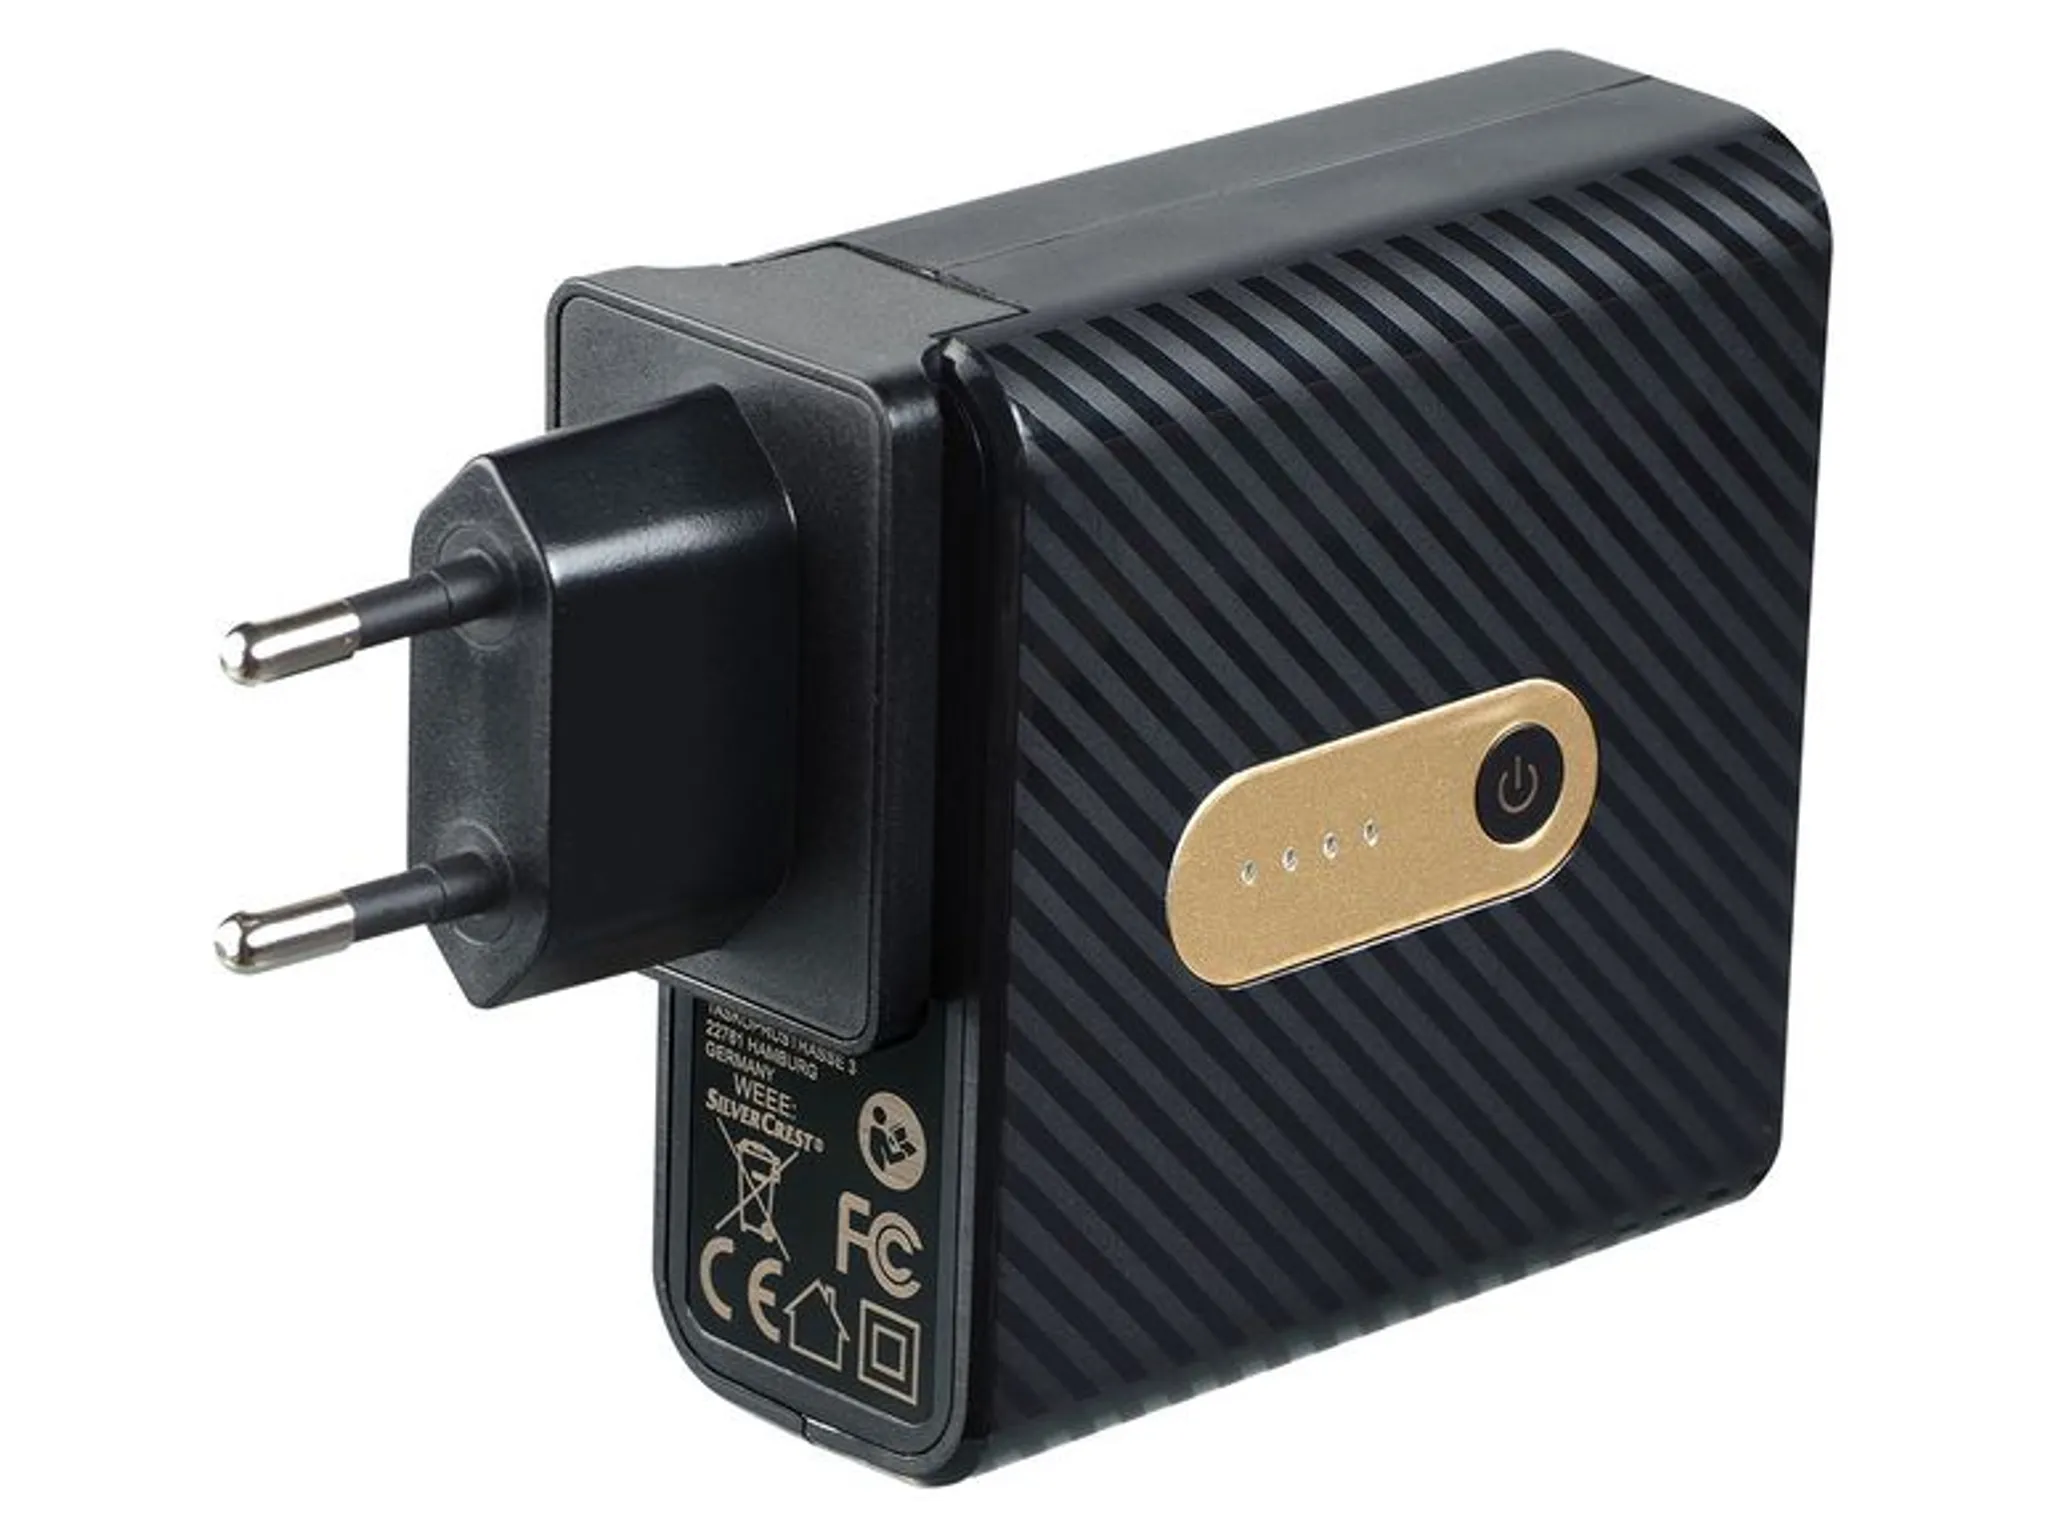 2-er USB Ladegerät Reise Mobil 230V Stecker + 12V KFZ Auto Buchse